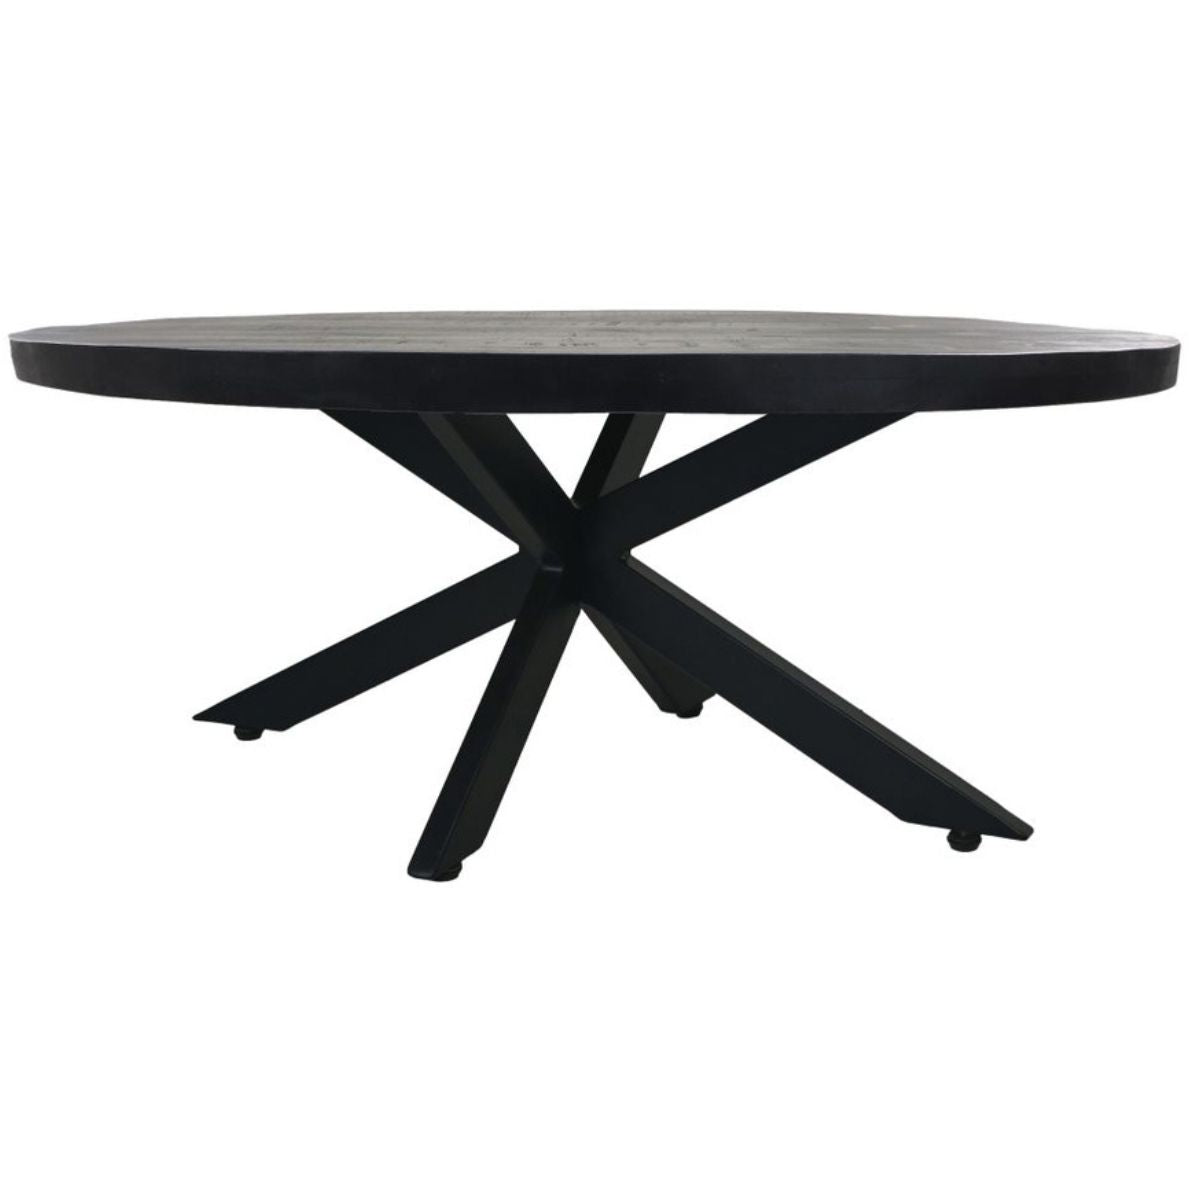 Elegant en stoer design: zwart mangohout, geschraapt tafelblad, ideaal voor moderne woonstijlen.